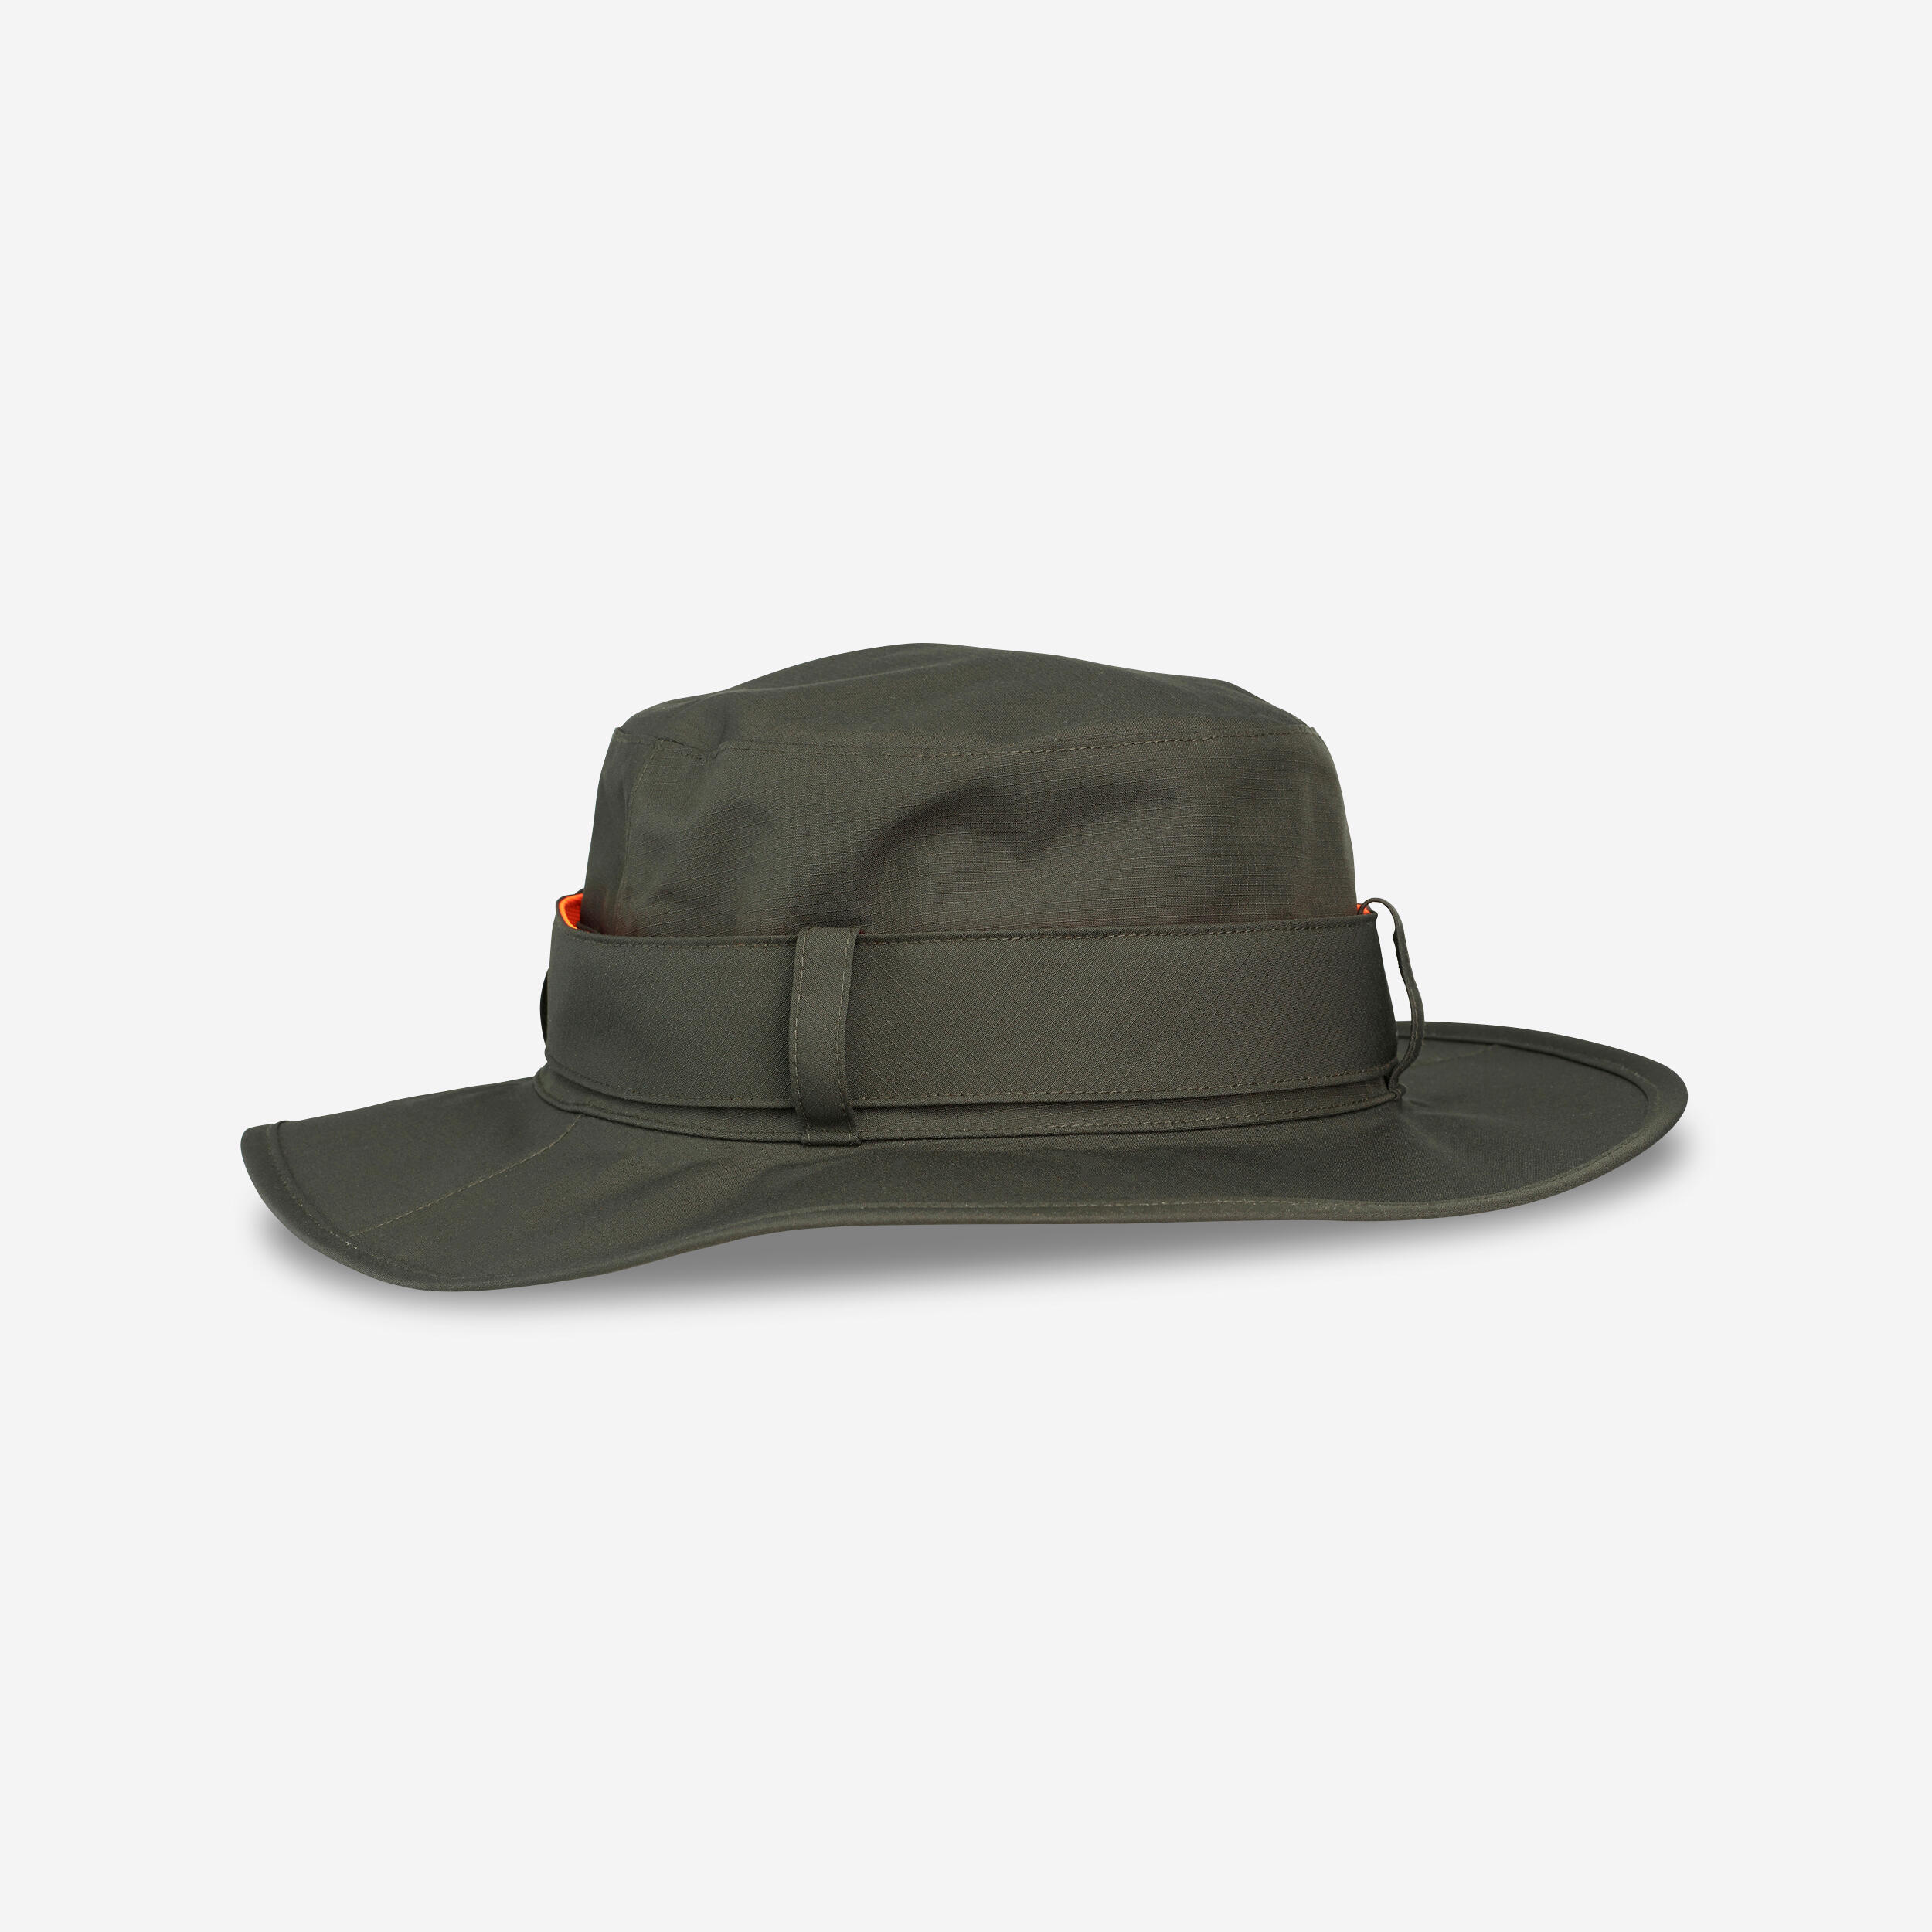 Pălărie SG520 impermeabilă și rezistentă verde bărbați